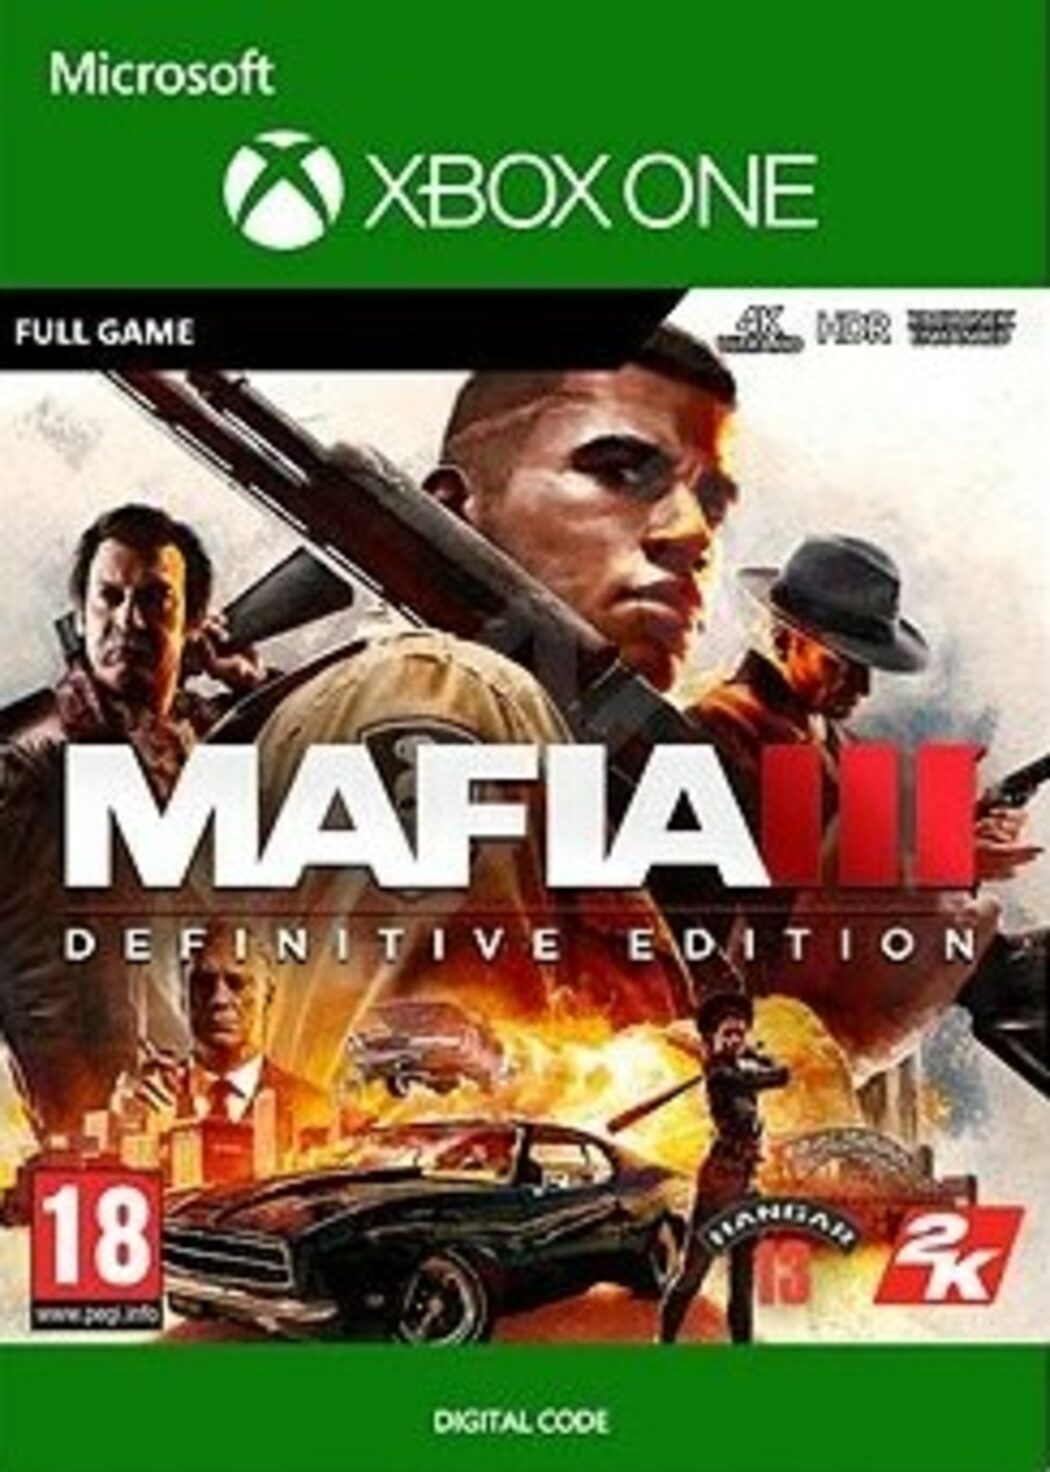 Mafia Definitive Edition - Toygames